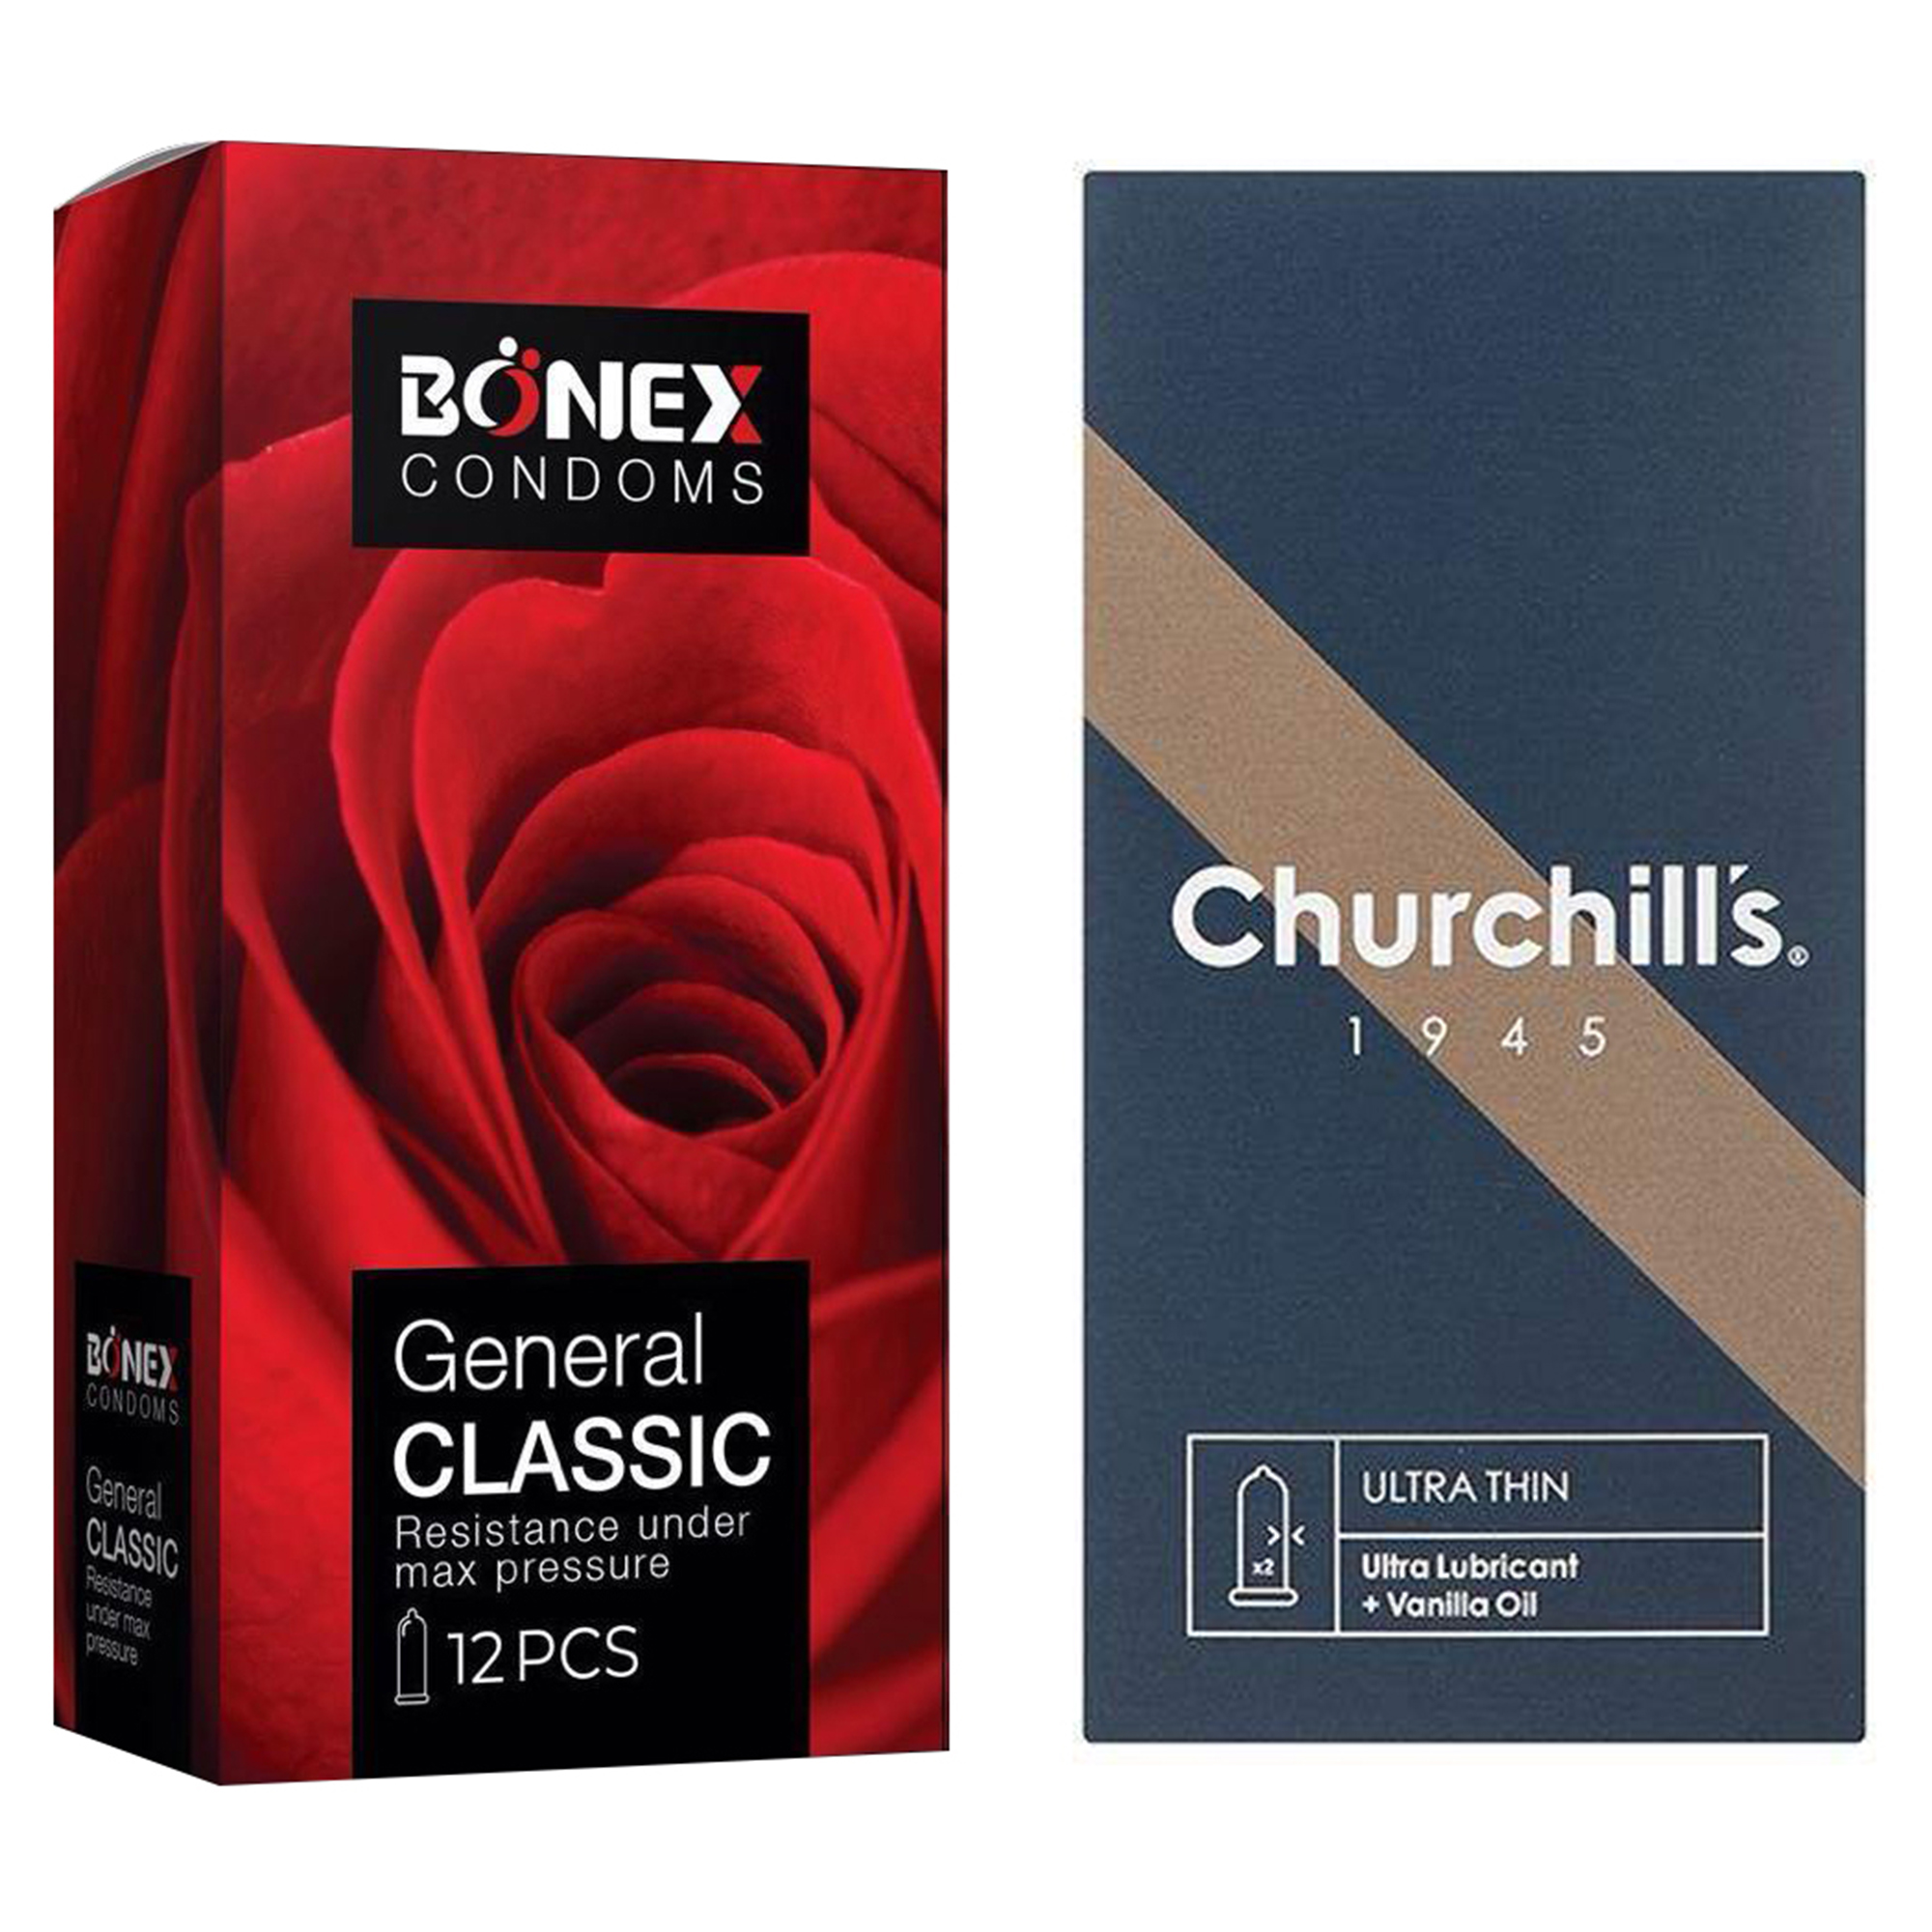 کاندوم چرچیلز مدل Ultra Thin بسته 12 عددی به همراه کاندوم بونکس مدل General Classic بسته 12 عددی 